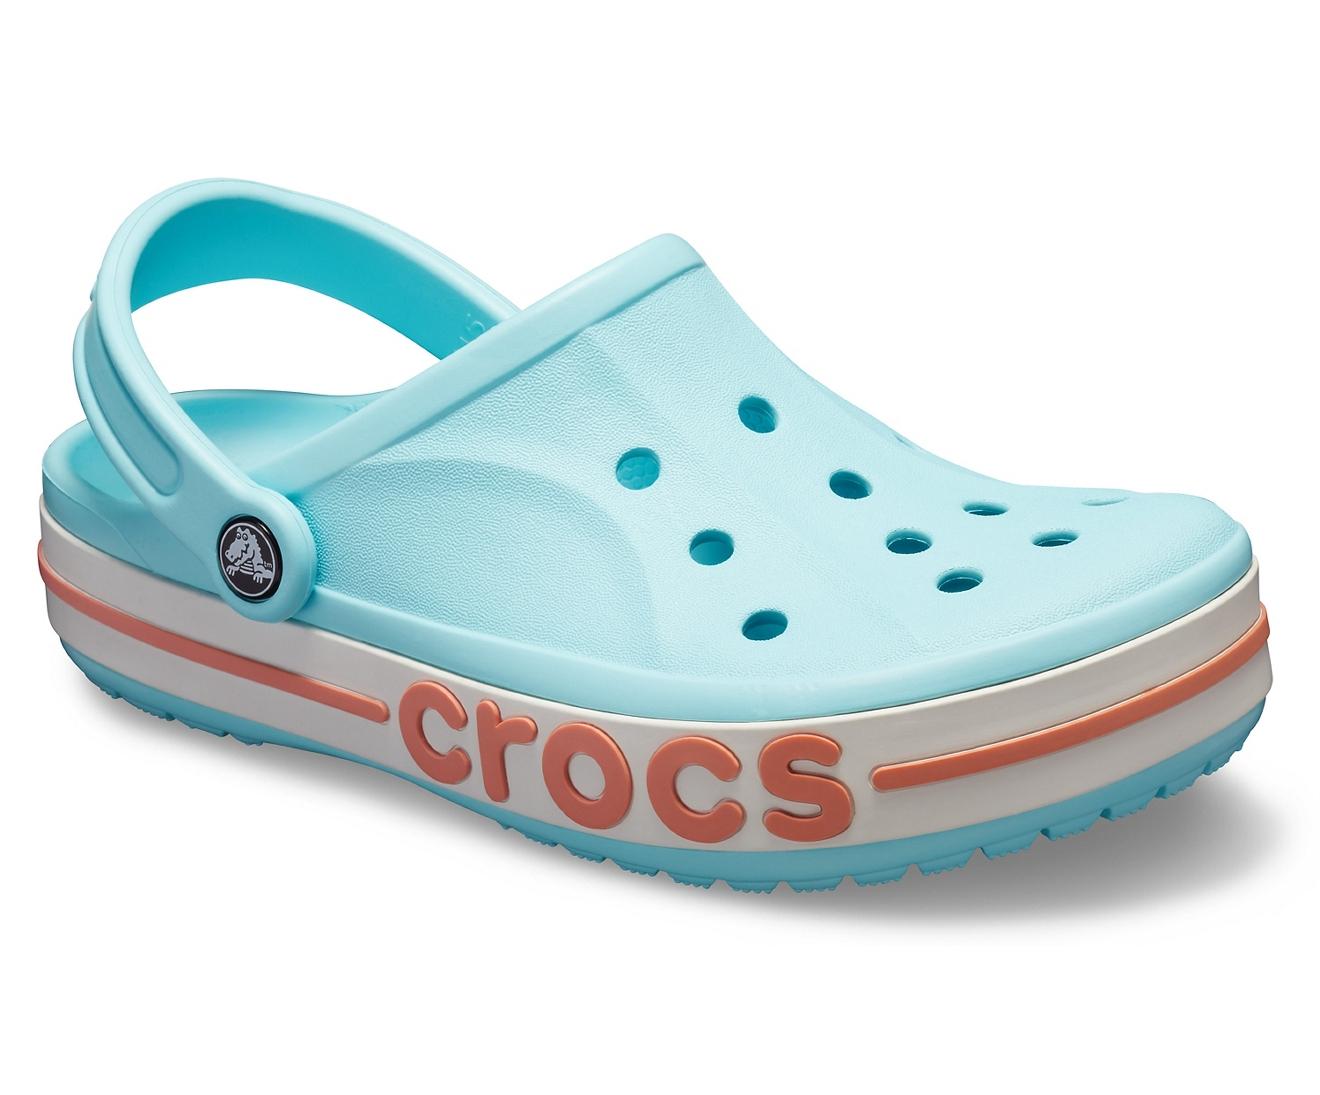 icy blue crocs